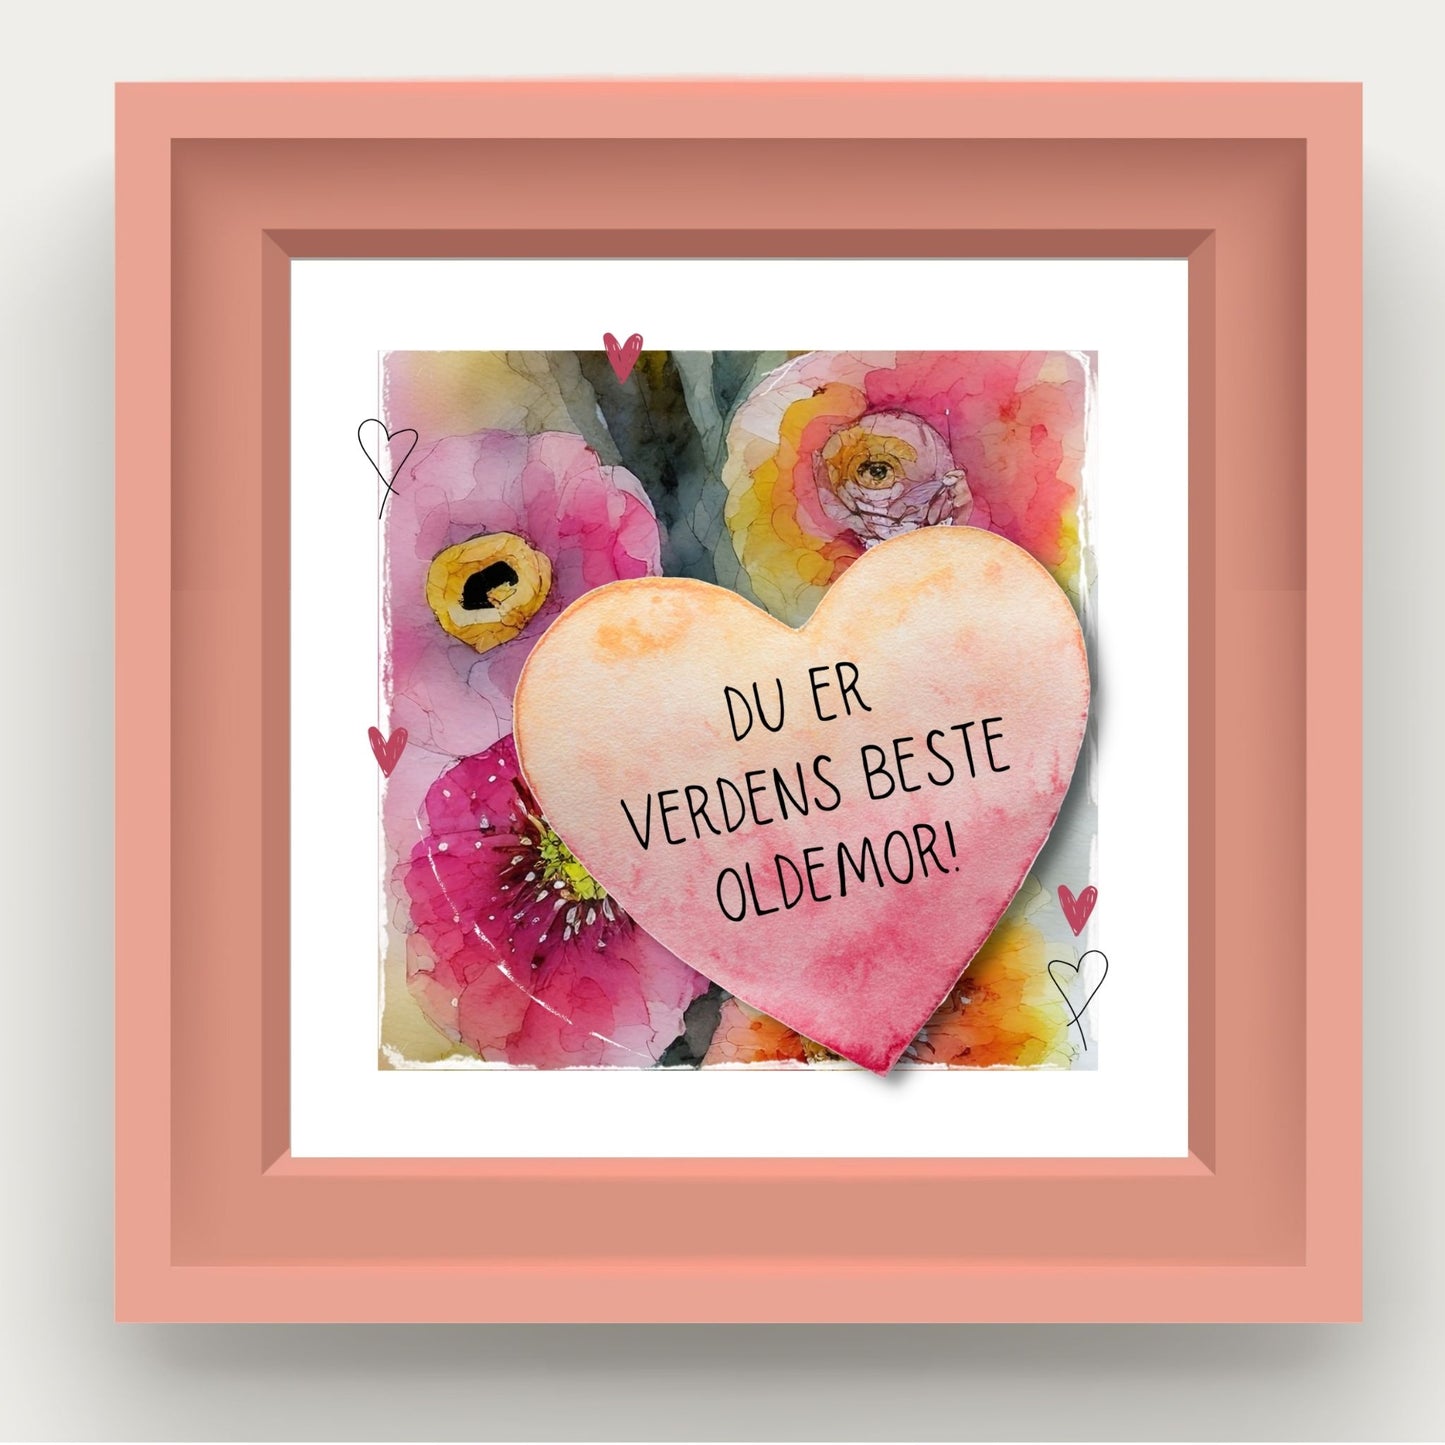 Grafisk plakat med et rosa hjerte påført tekst "Du er verdens beste oldermor". Bagrunn i cerise og guloransje blomster. Illustrasjon som viser plakat i rosa ramme.